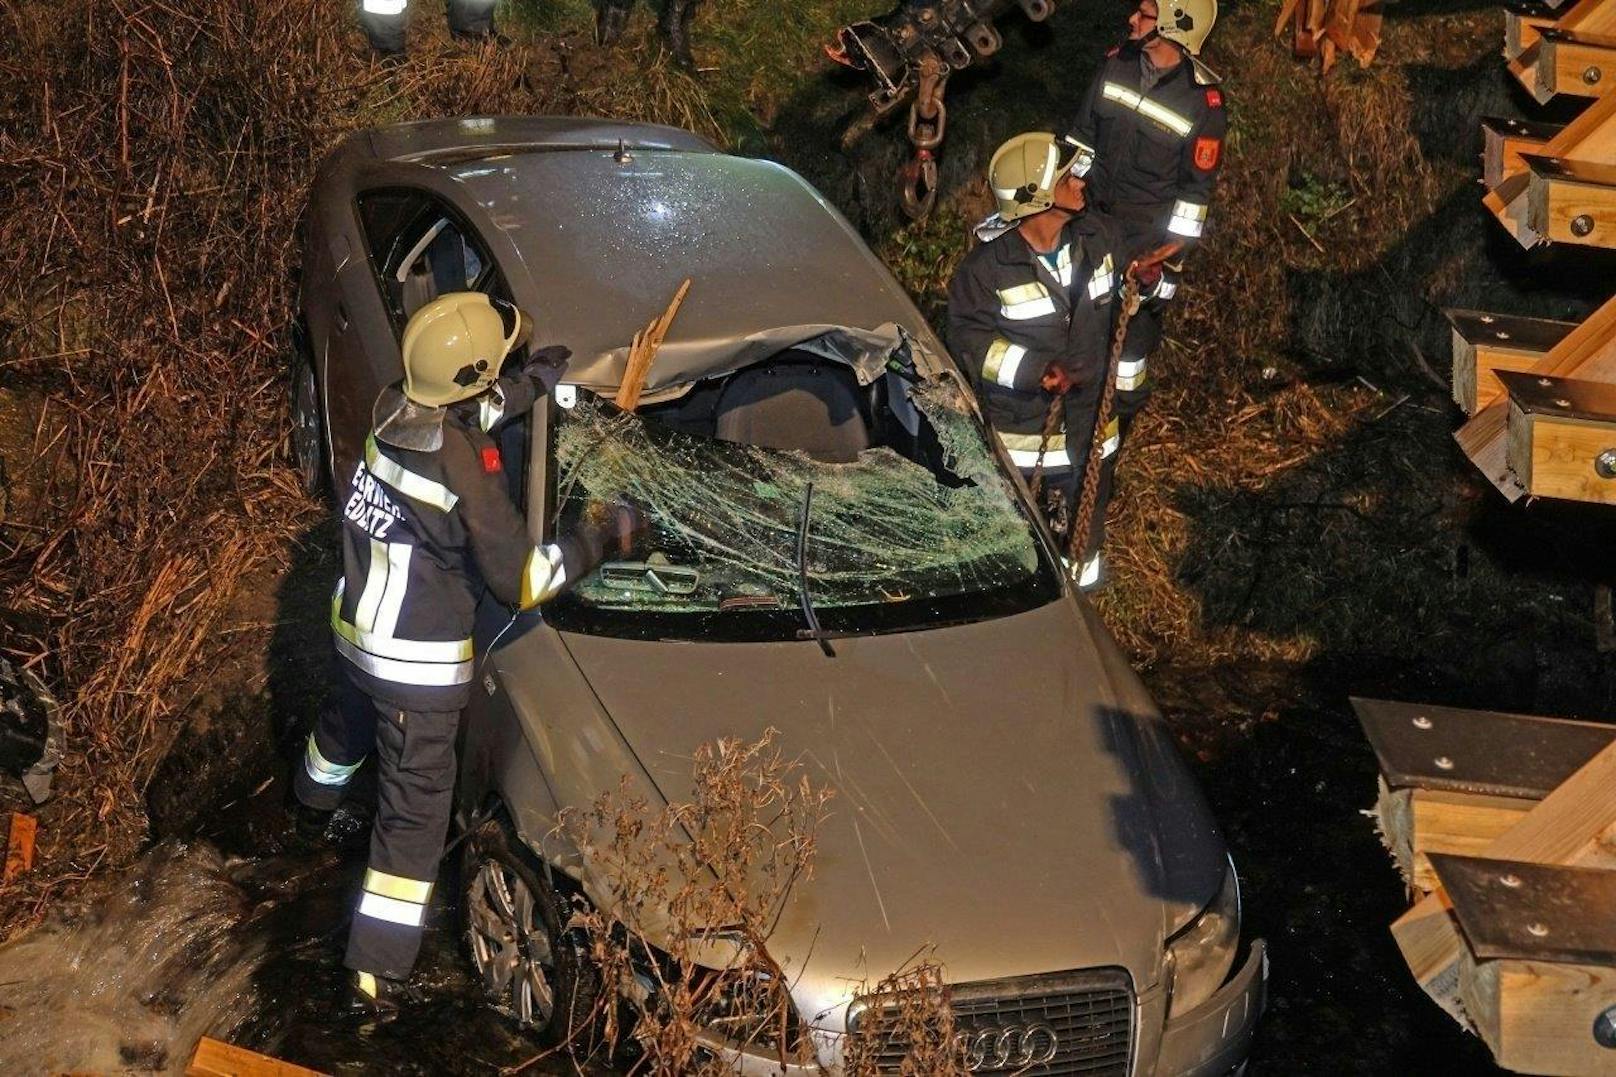 Spektakulärer Crash: Audi landete in Bach, Balken bohrt sich durch die Windschutzscheibe